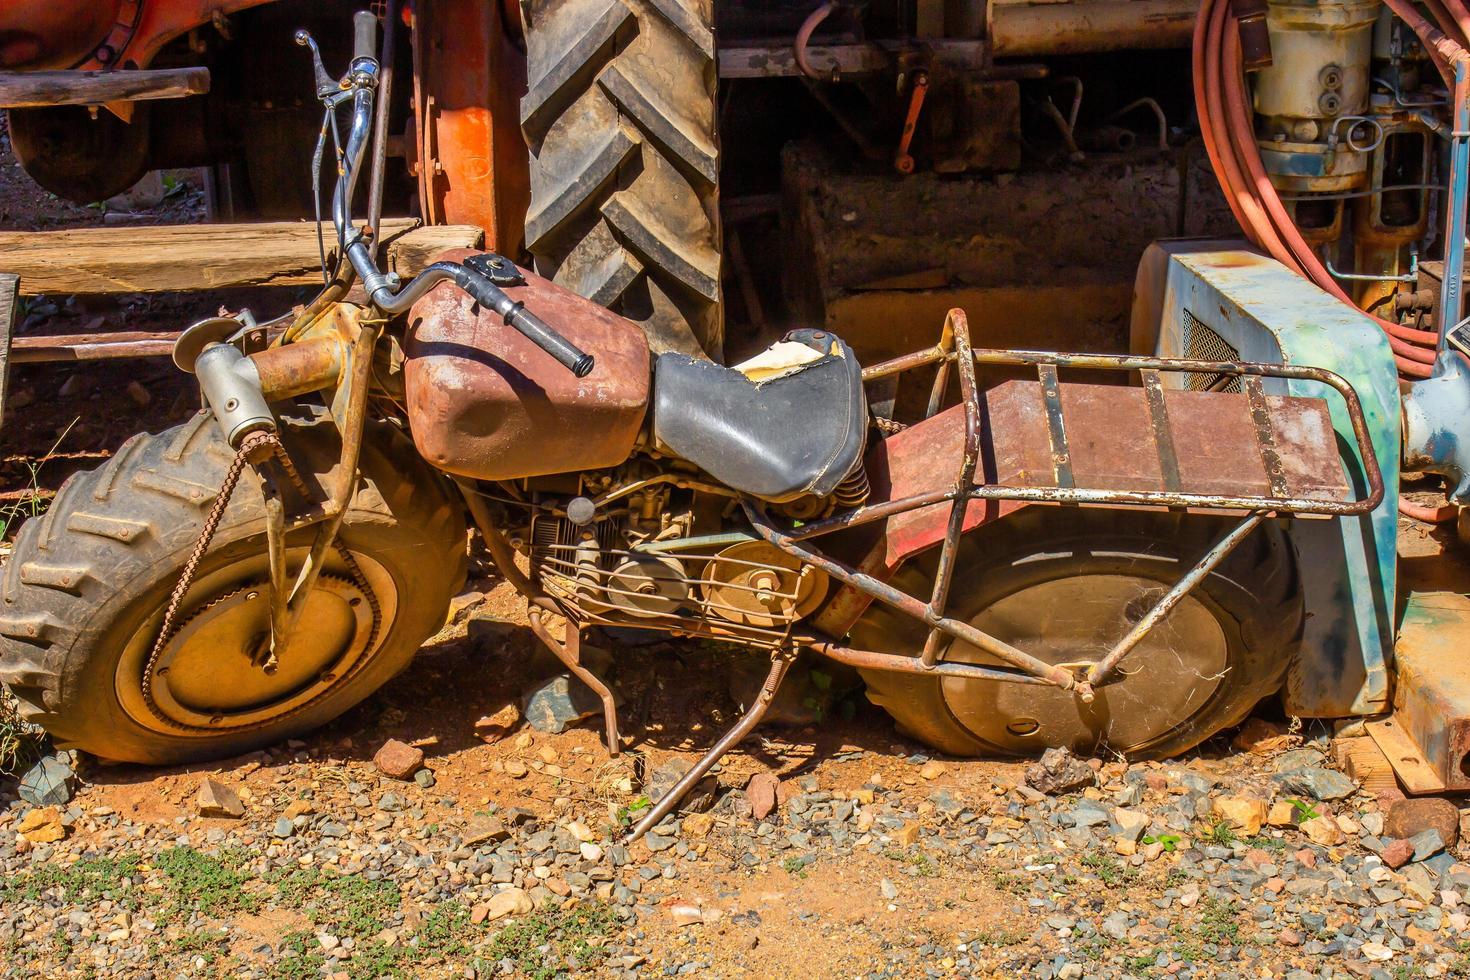 Old Rusty Motor Cycle In Junkyard photo